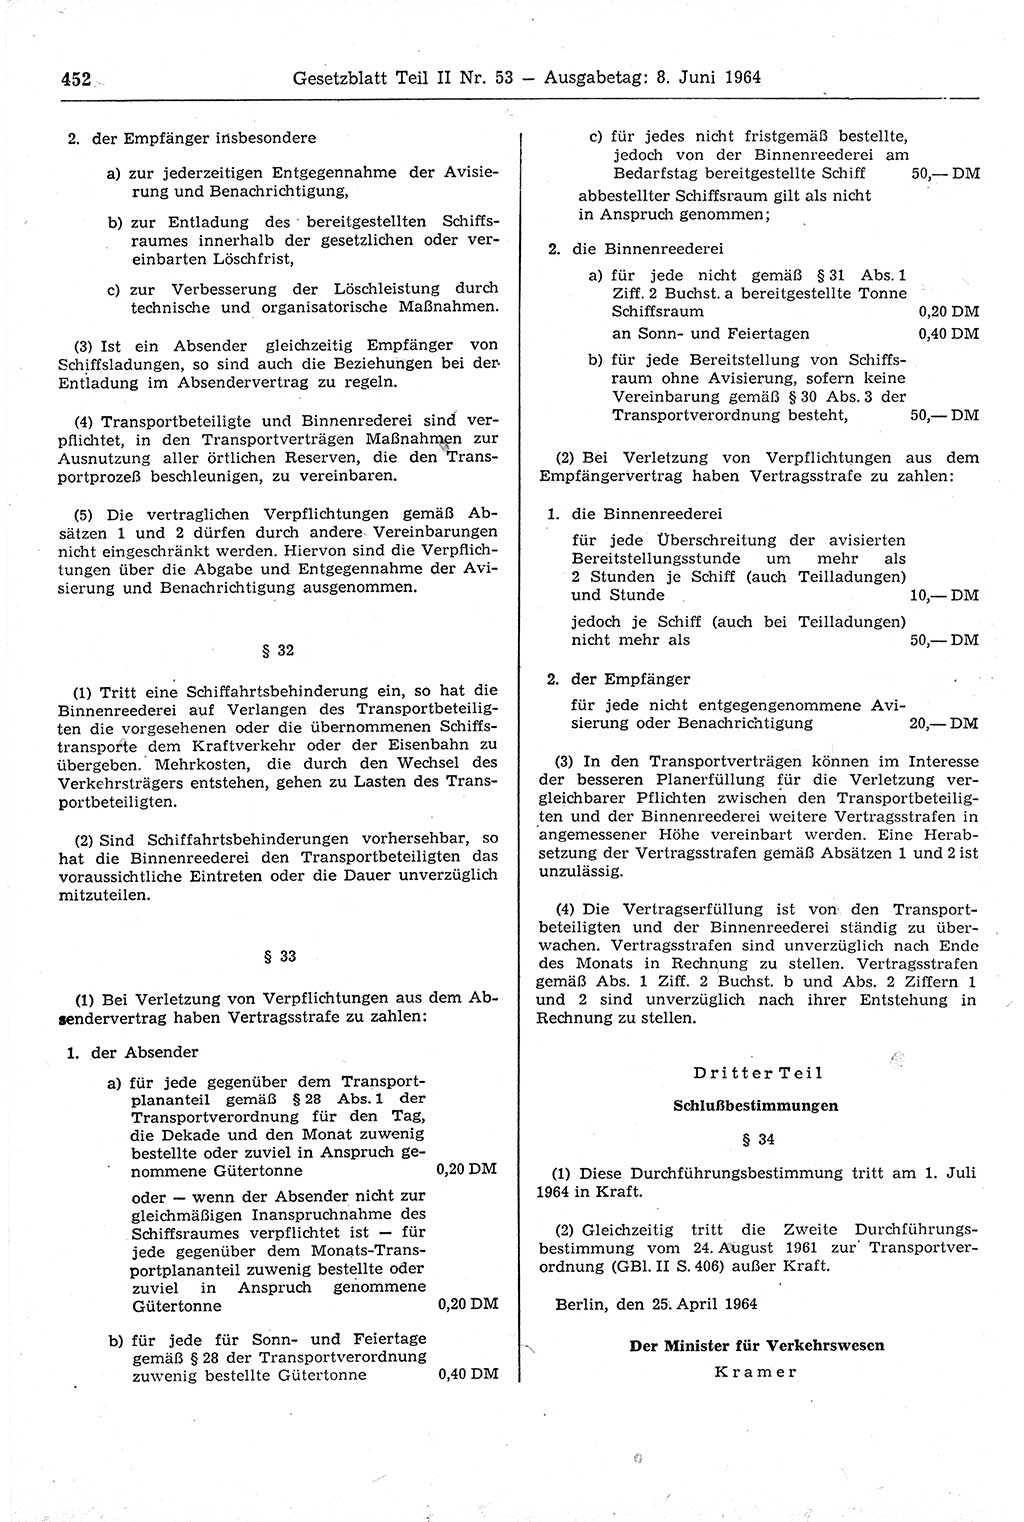 Gesetzblatt (GBl.) der Deutschen Demokratischen Republik (DDR) Teil ⅠⅠ 1964, Seite 452 (GBl. DDR ⅠⅠ 1964, S. 452)